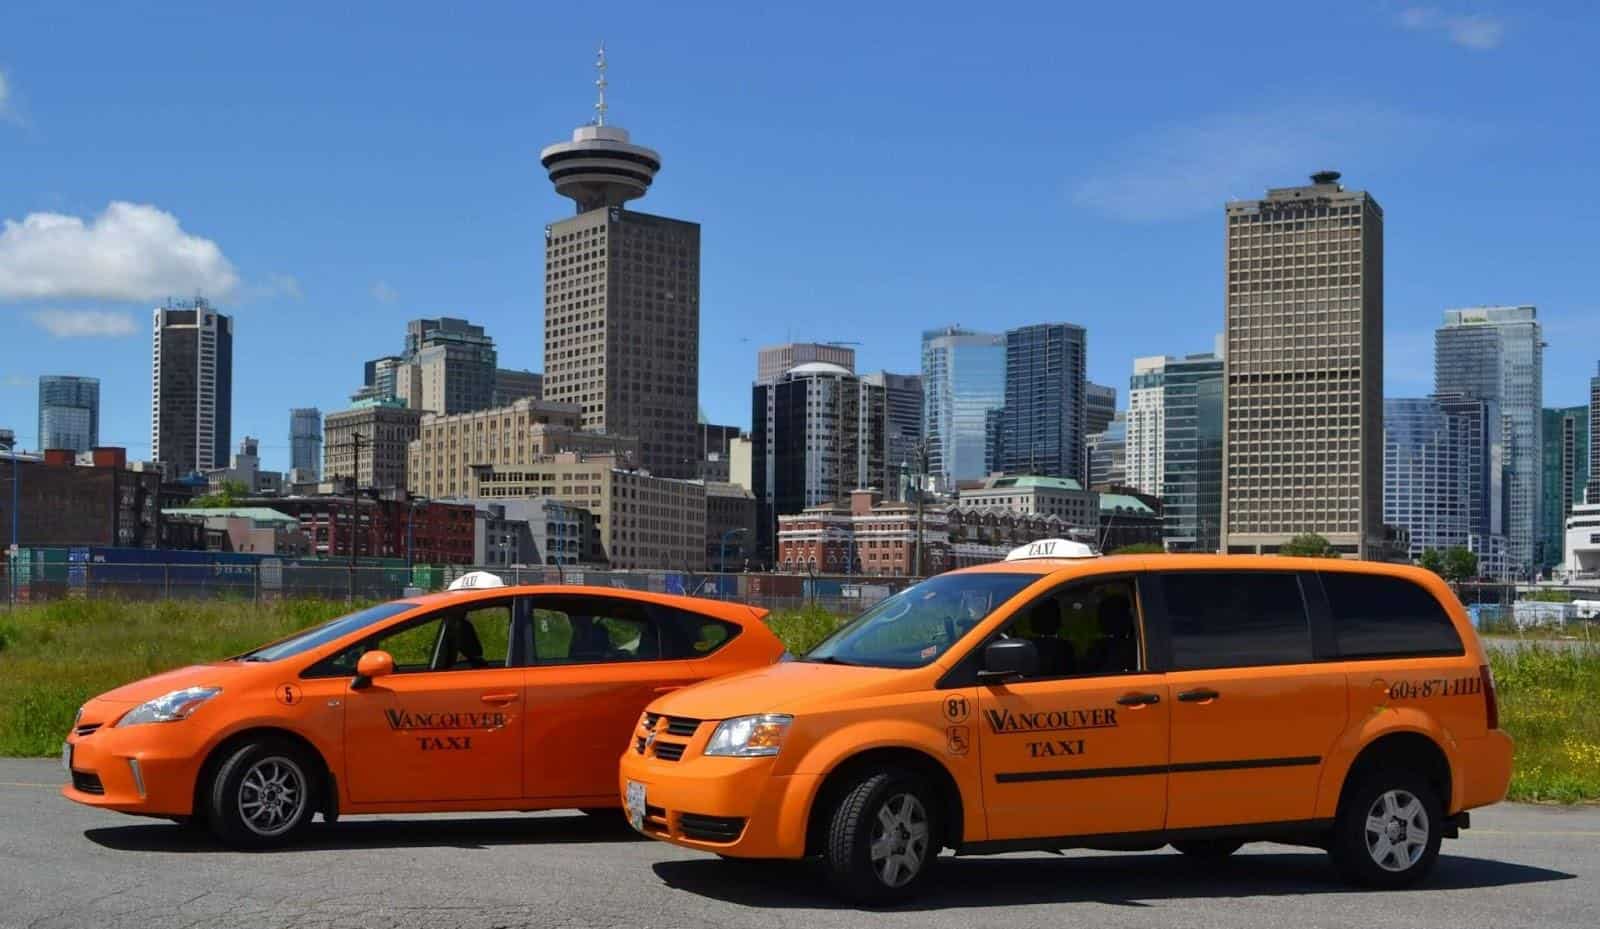 Di chuyển từ sân bay về trung tâm thành phố Vancouver bằng taxi